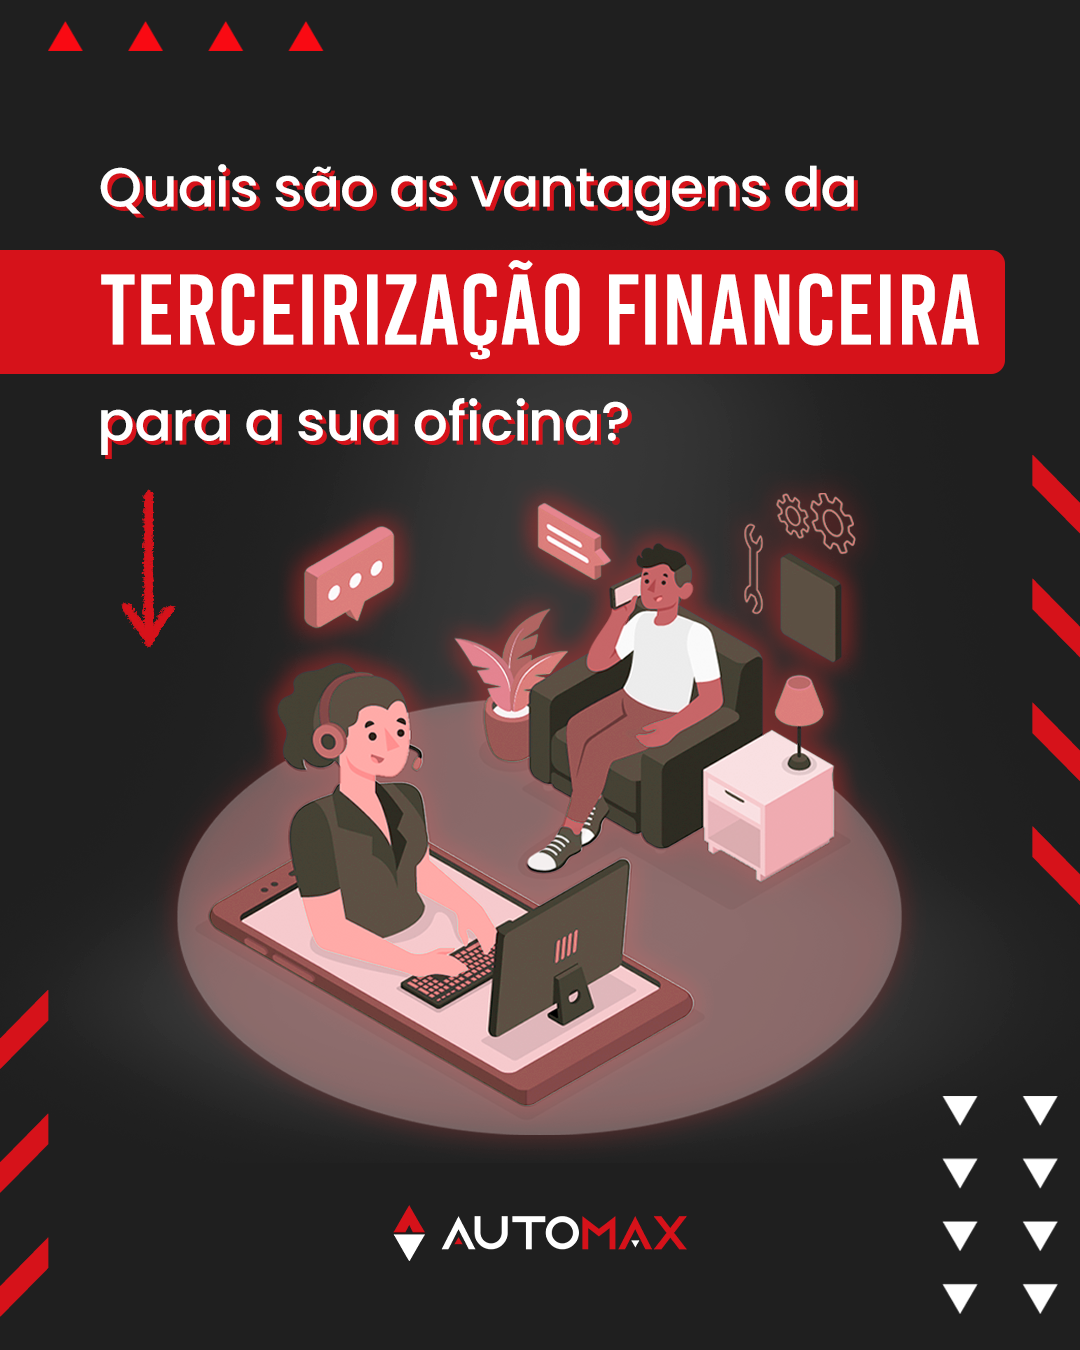 Capa do blog sobre terceirização financeira do Automax.